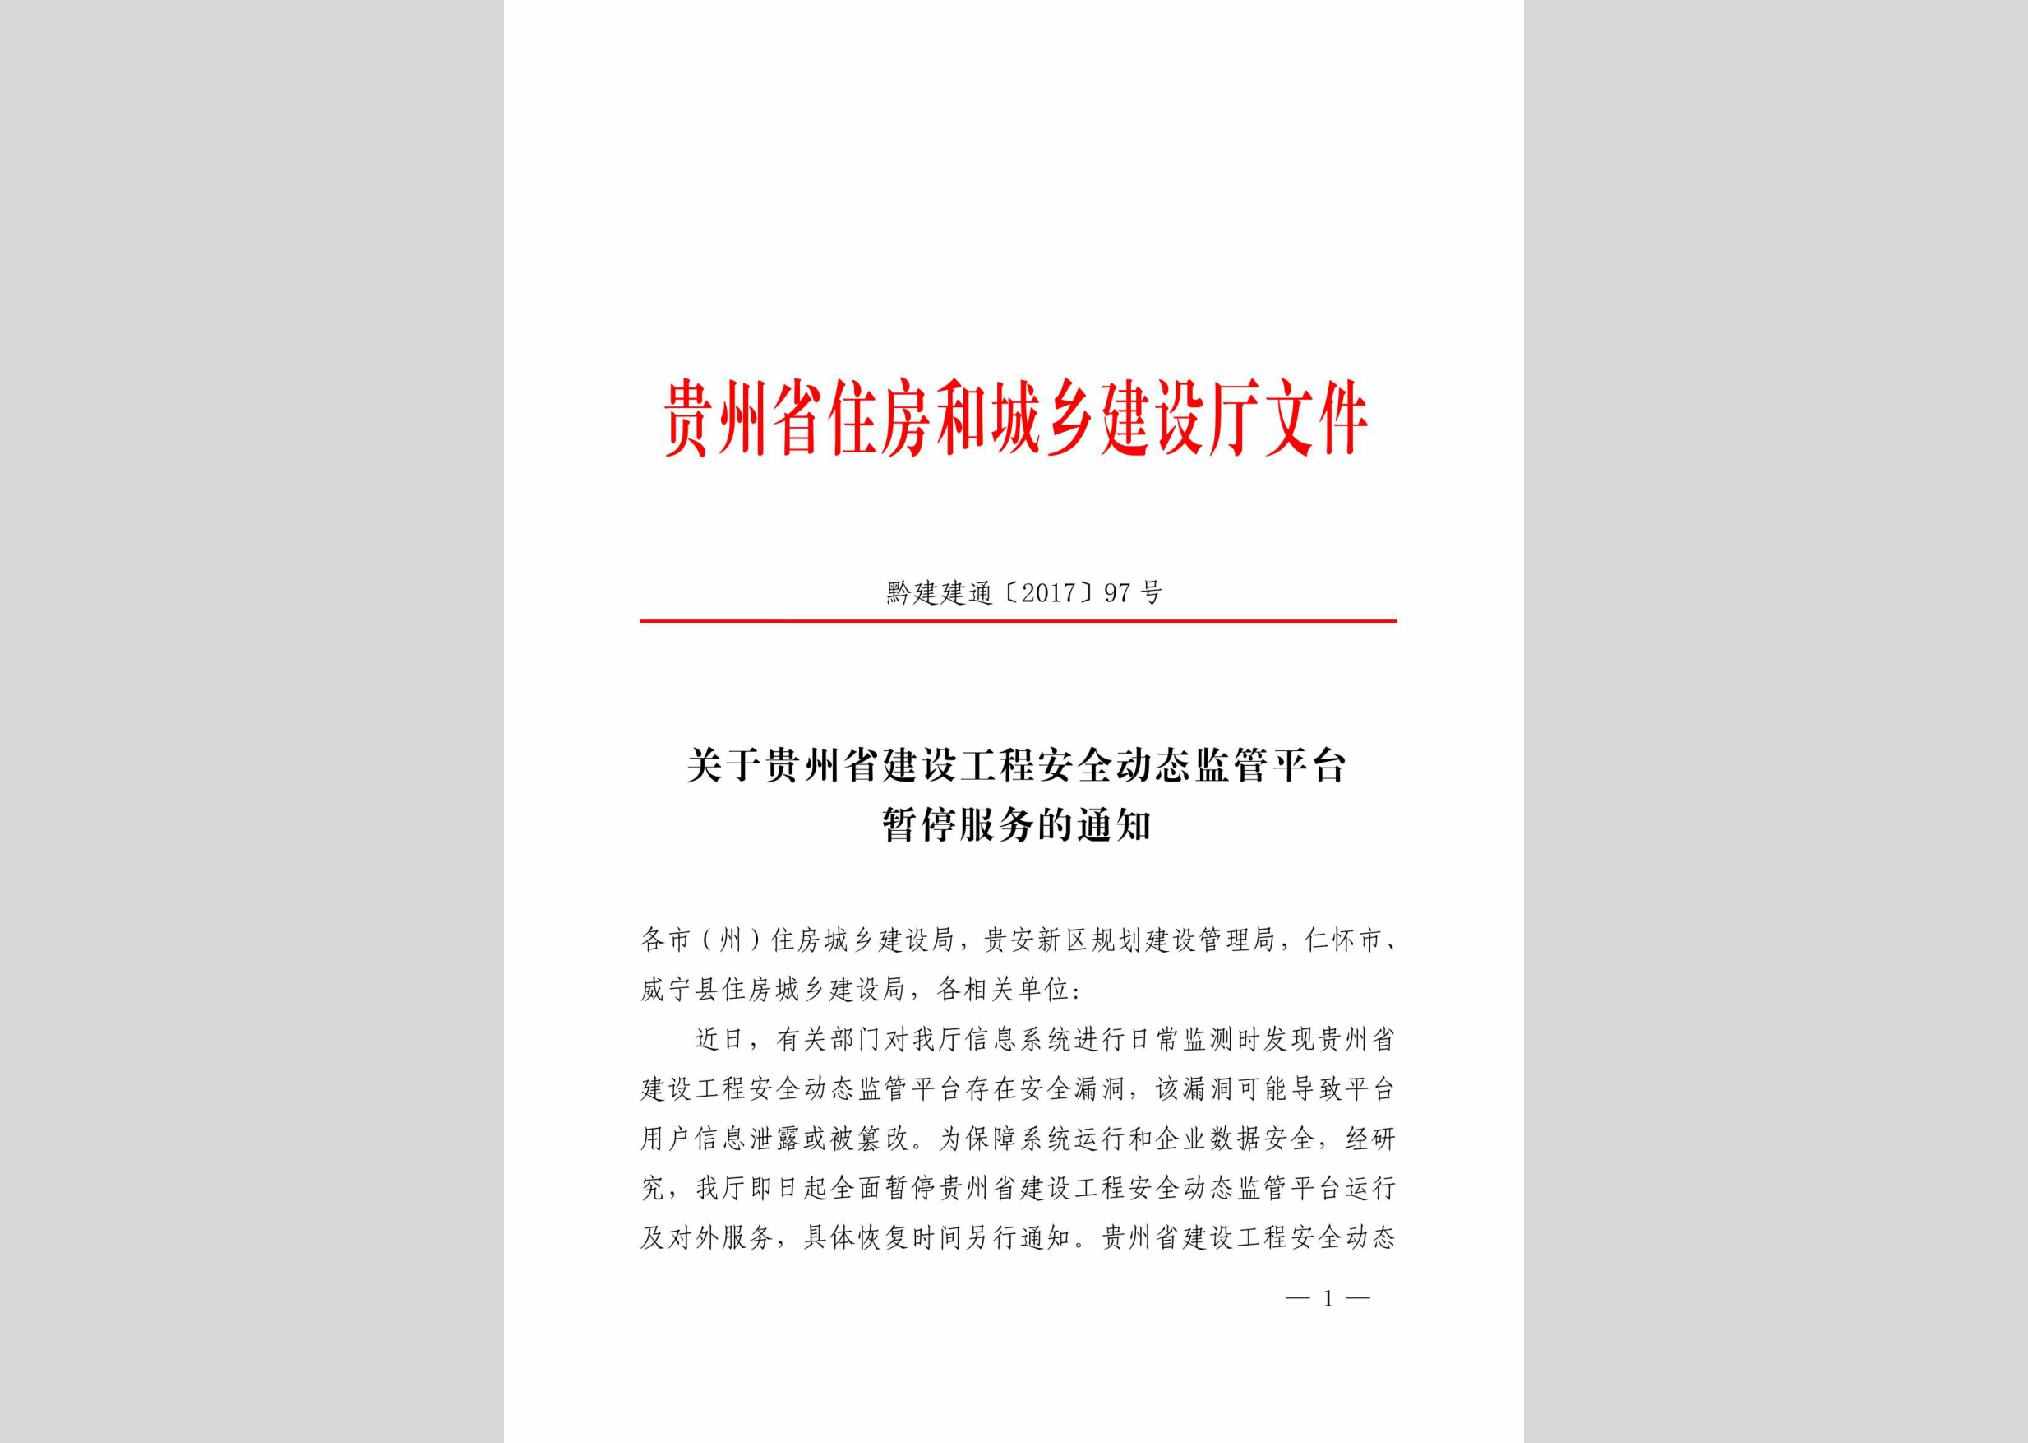 黔建建通[2017]97号：关于贵州省建设工程安全动态监管平台暂停服务的通知